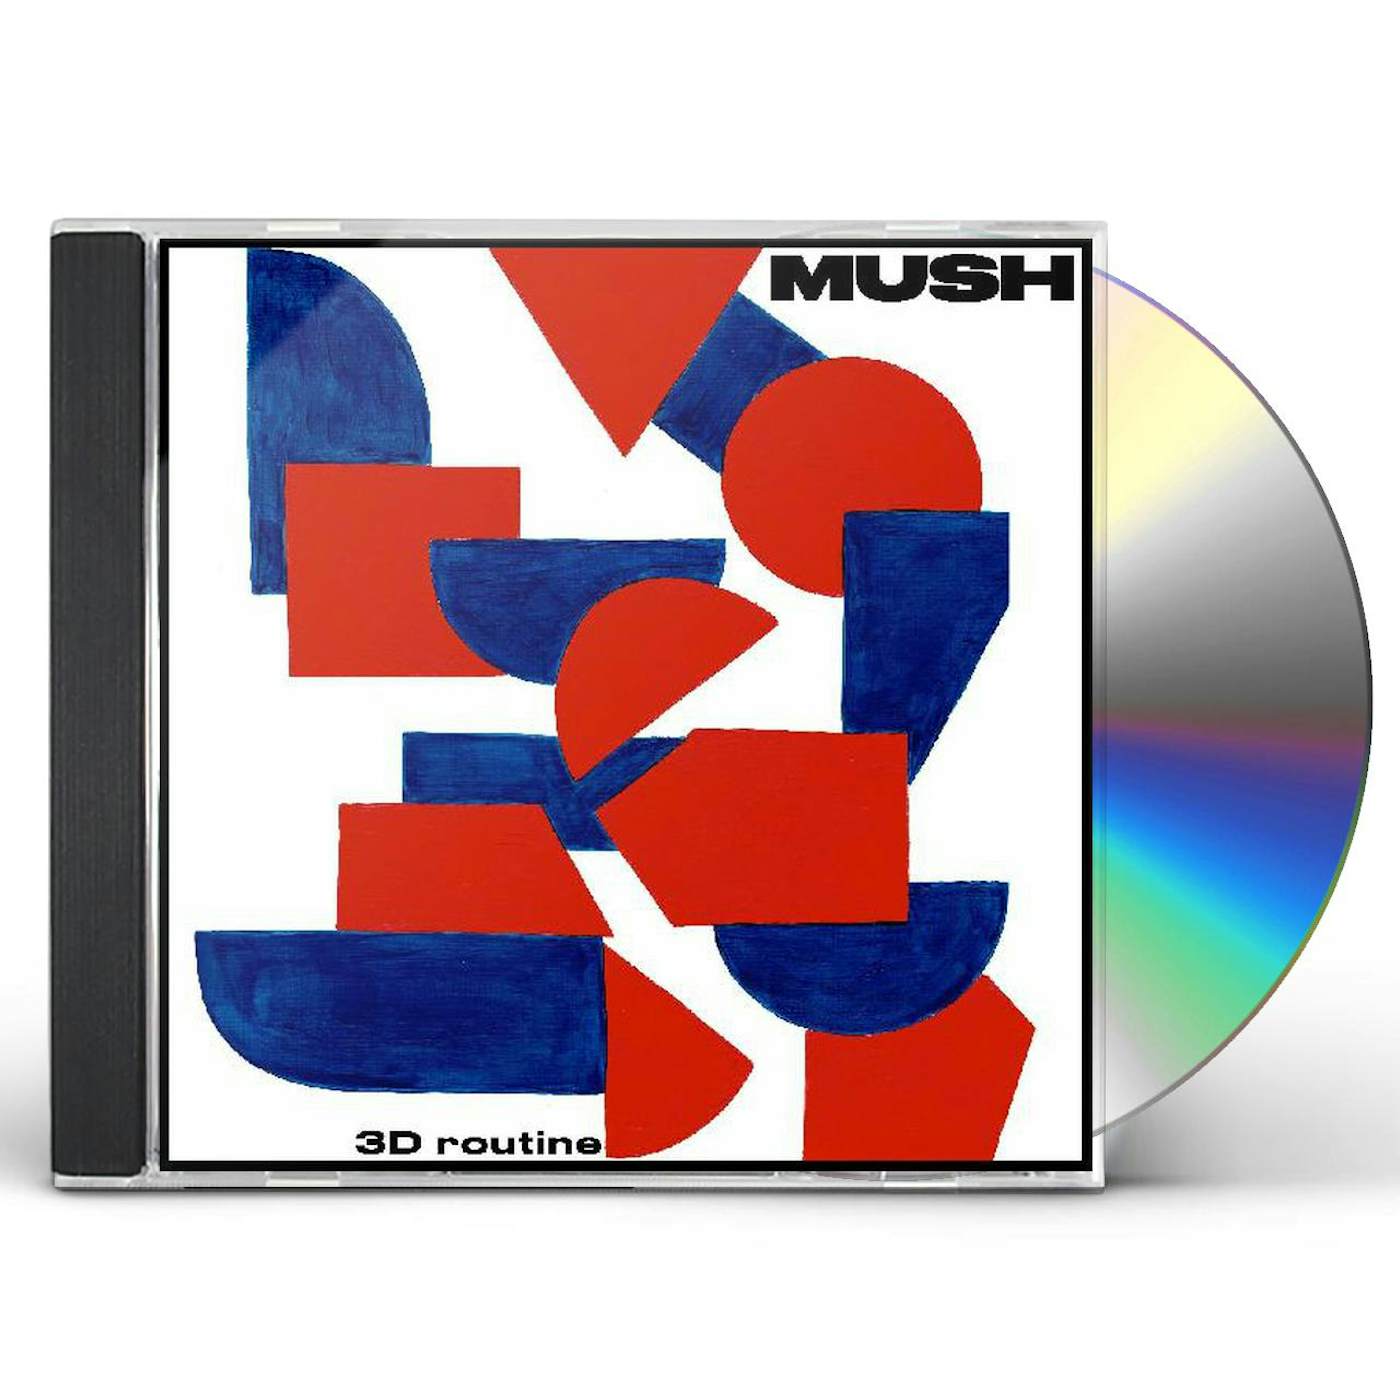 Mush 3 D Routine CD